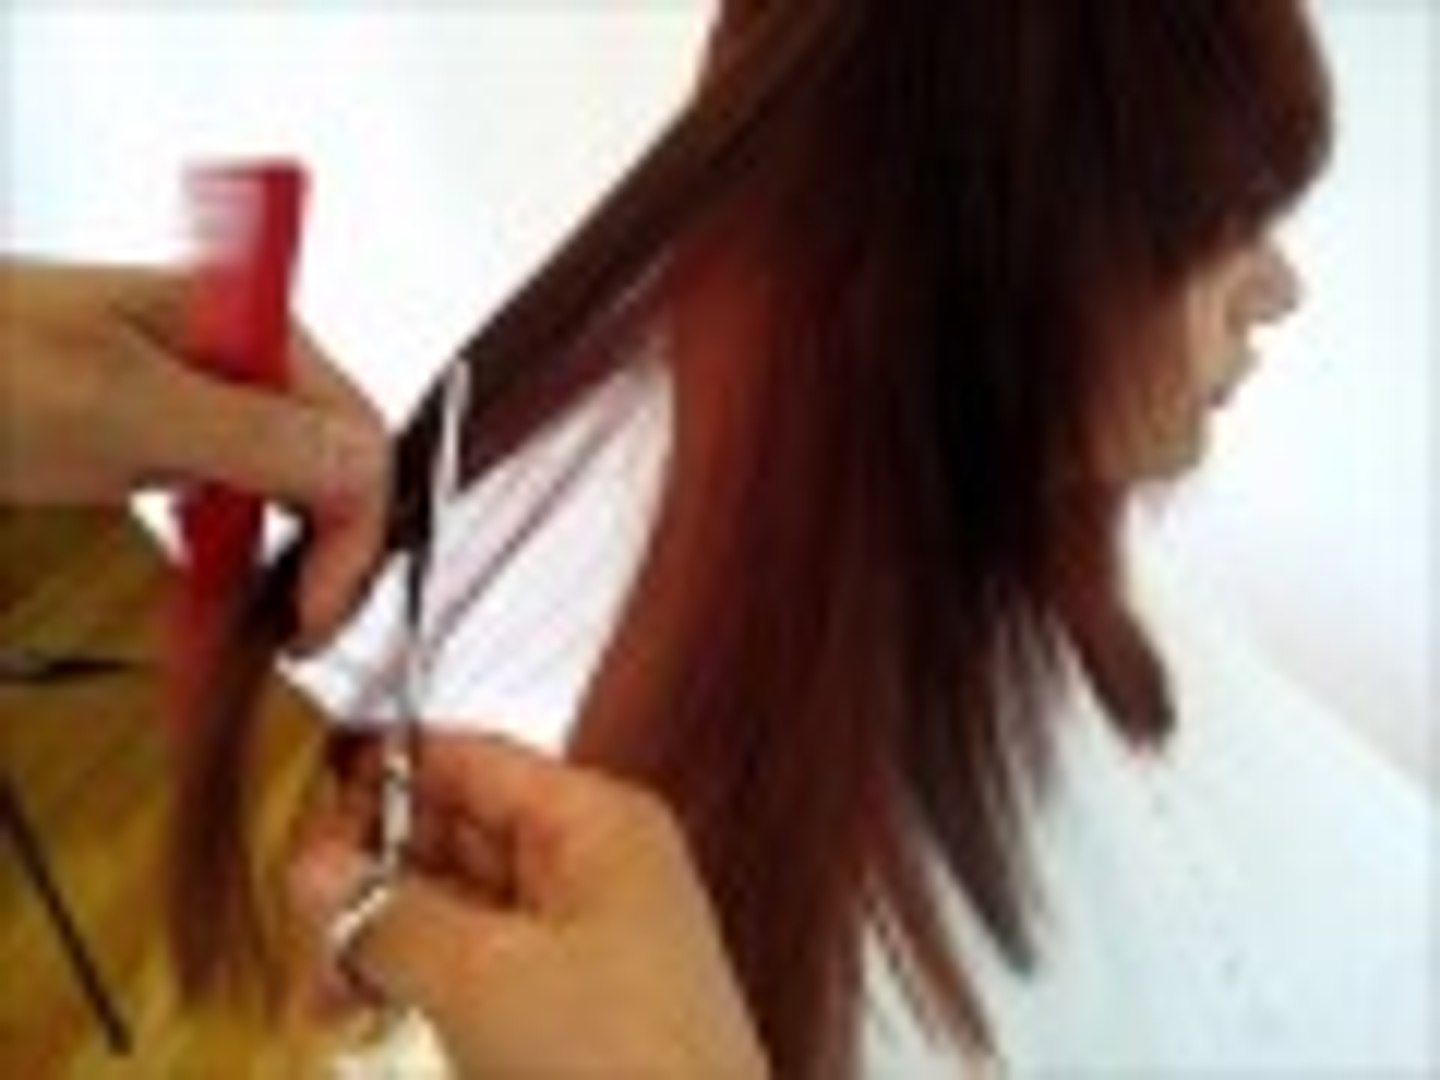 Cut Hair short - Long hair cutting & haircut for women - step by step DIY -  video Dailymotion